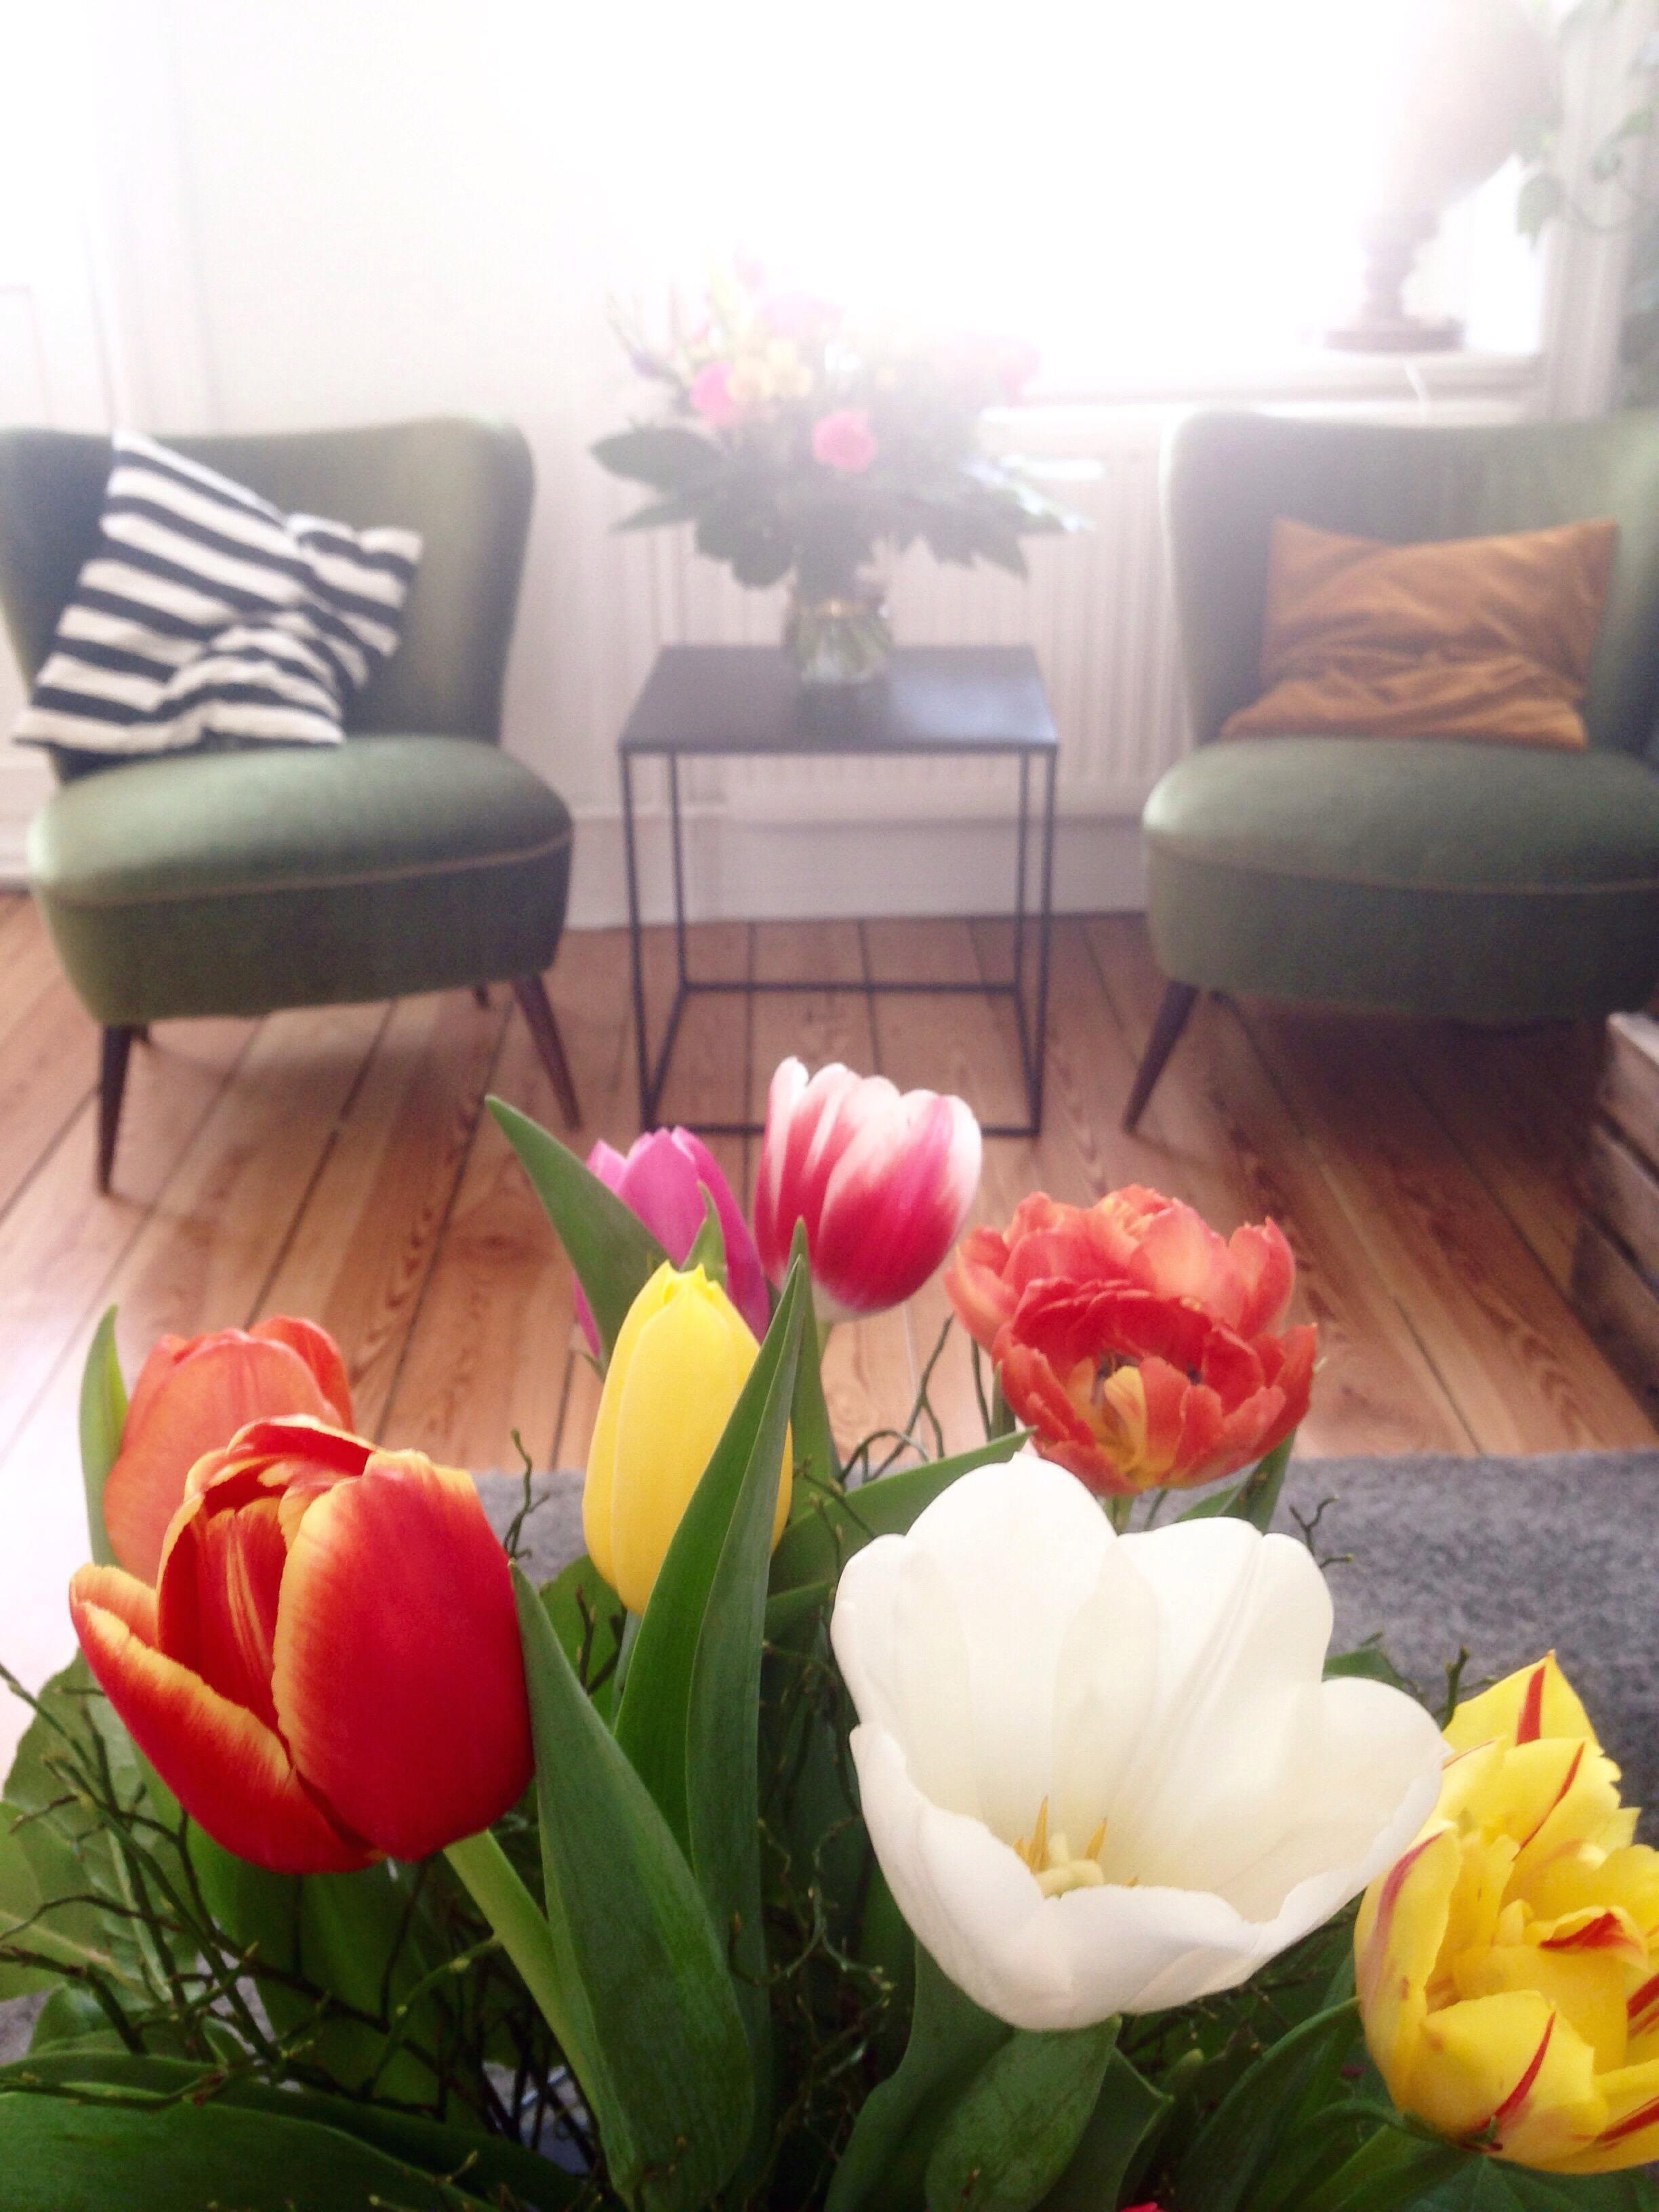 Die schönsten #frühlingsvorboten sind #blumen !
#Tulpen im #vintage #altbau #wohnzimmer